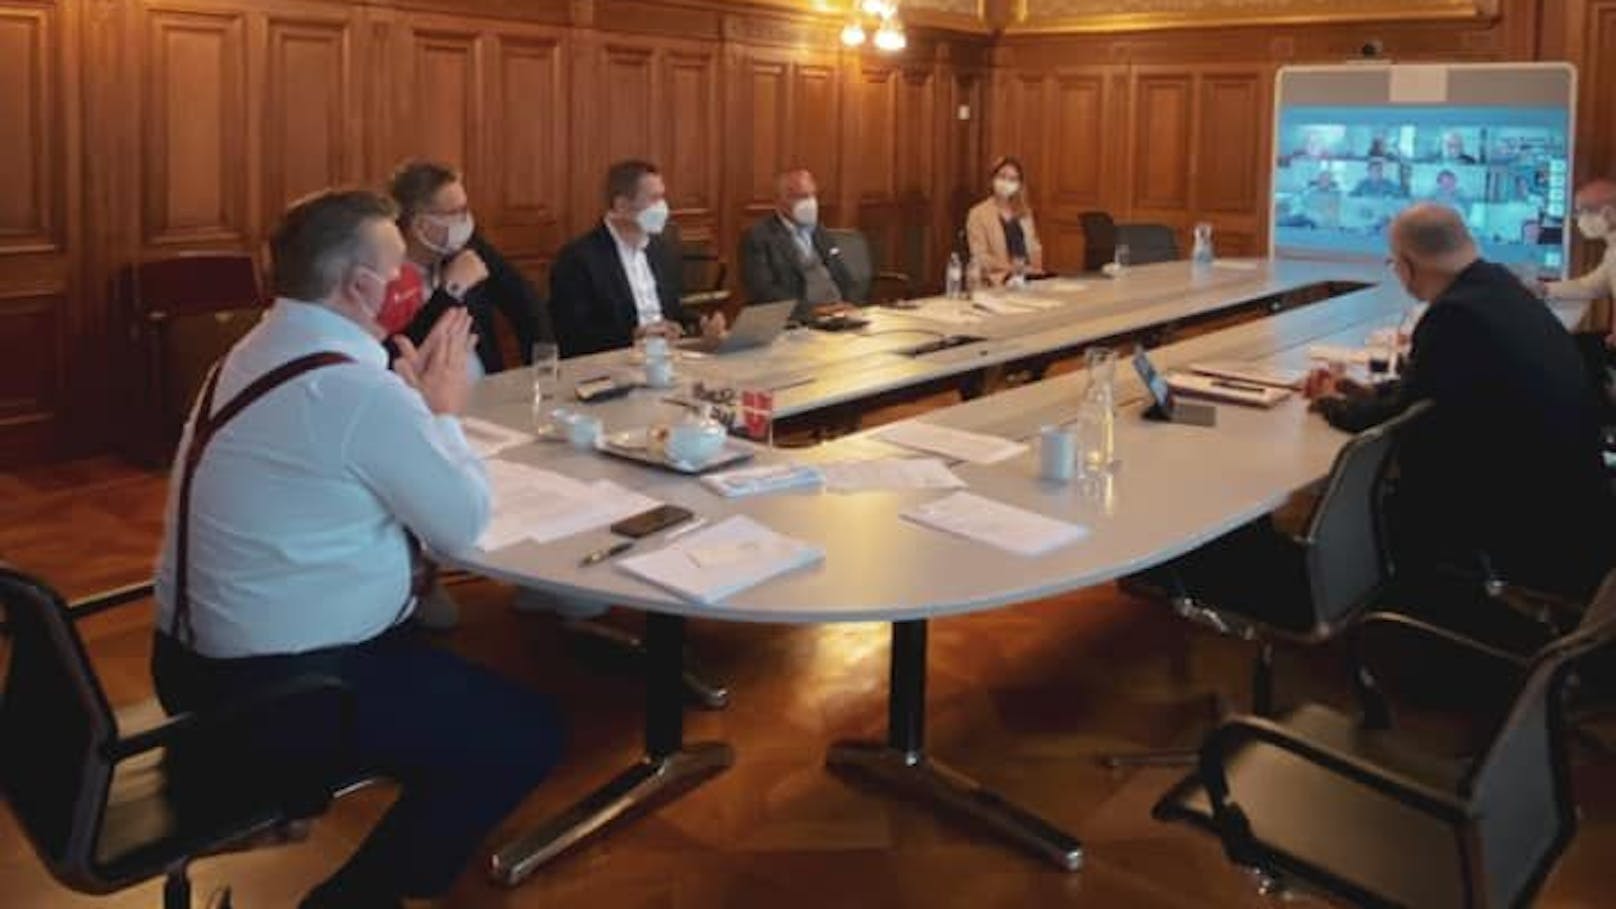 "Um auf den kommenden Herbst als Stadt gut vorbereitet zu sein", berät sich Wiens Bürgermeister mit einer Expertengruppe.